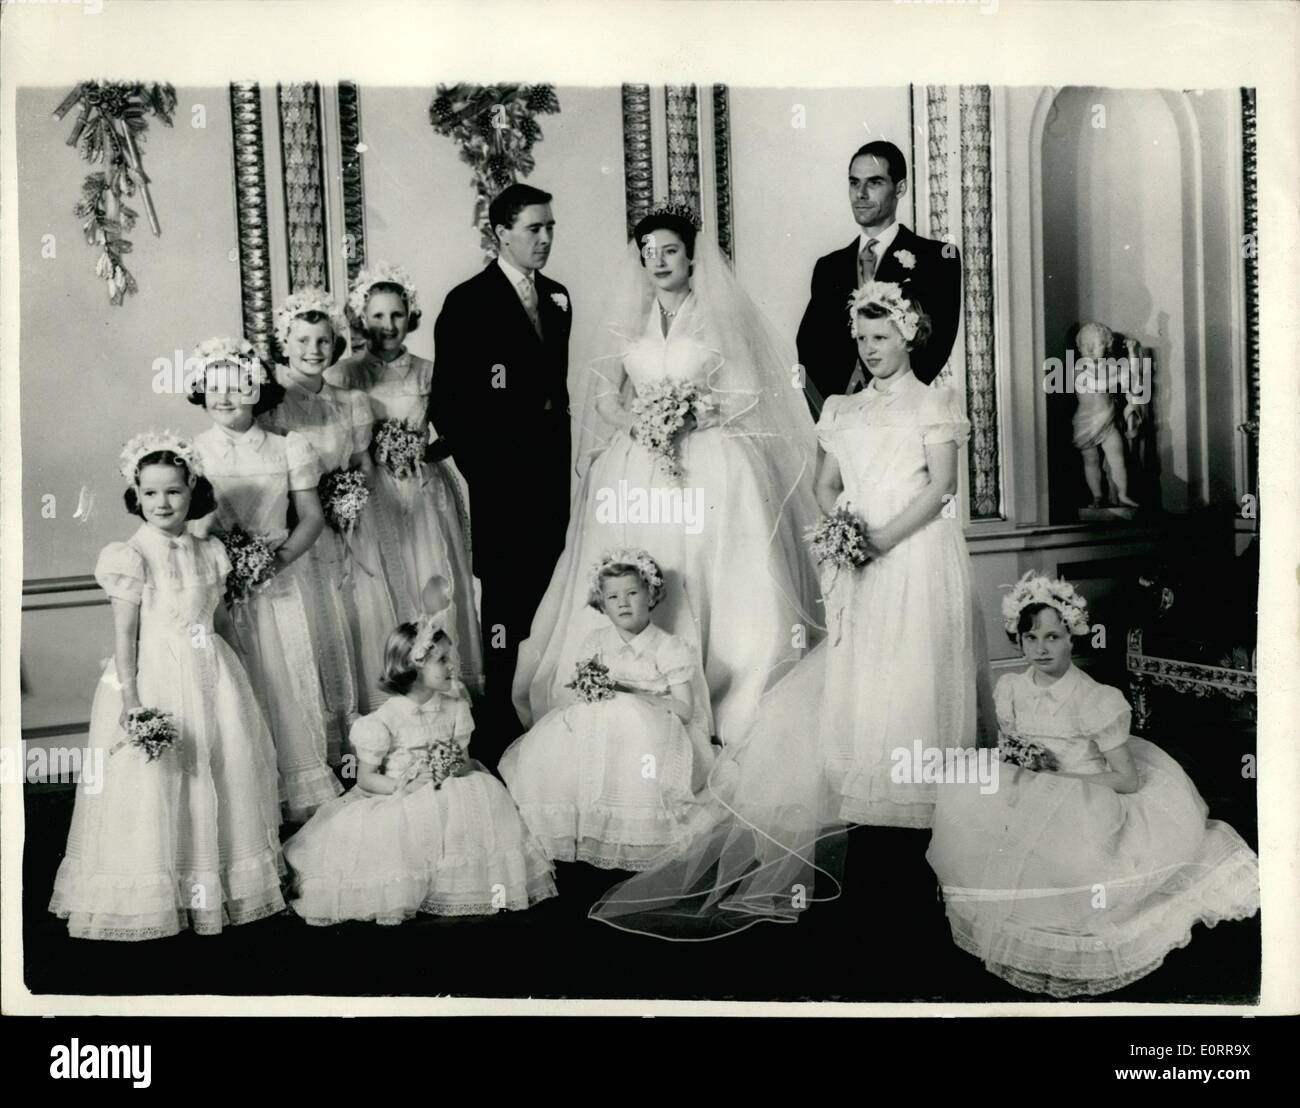 Mai 05, 1960 - Le Mariage Royal groupe officiel à Buckingham Palace. La photo montre la Princesse Margaret avec son mari Anthony Armstrong Jones - leurs demoiselles dont la princesse Anne (comité permanent - droit) et Meilleur homme - Dr Roger Gilliatt - au palais de Buckingham, cet après-midi. Banque D'Images